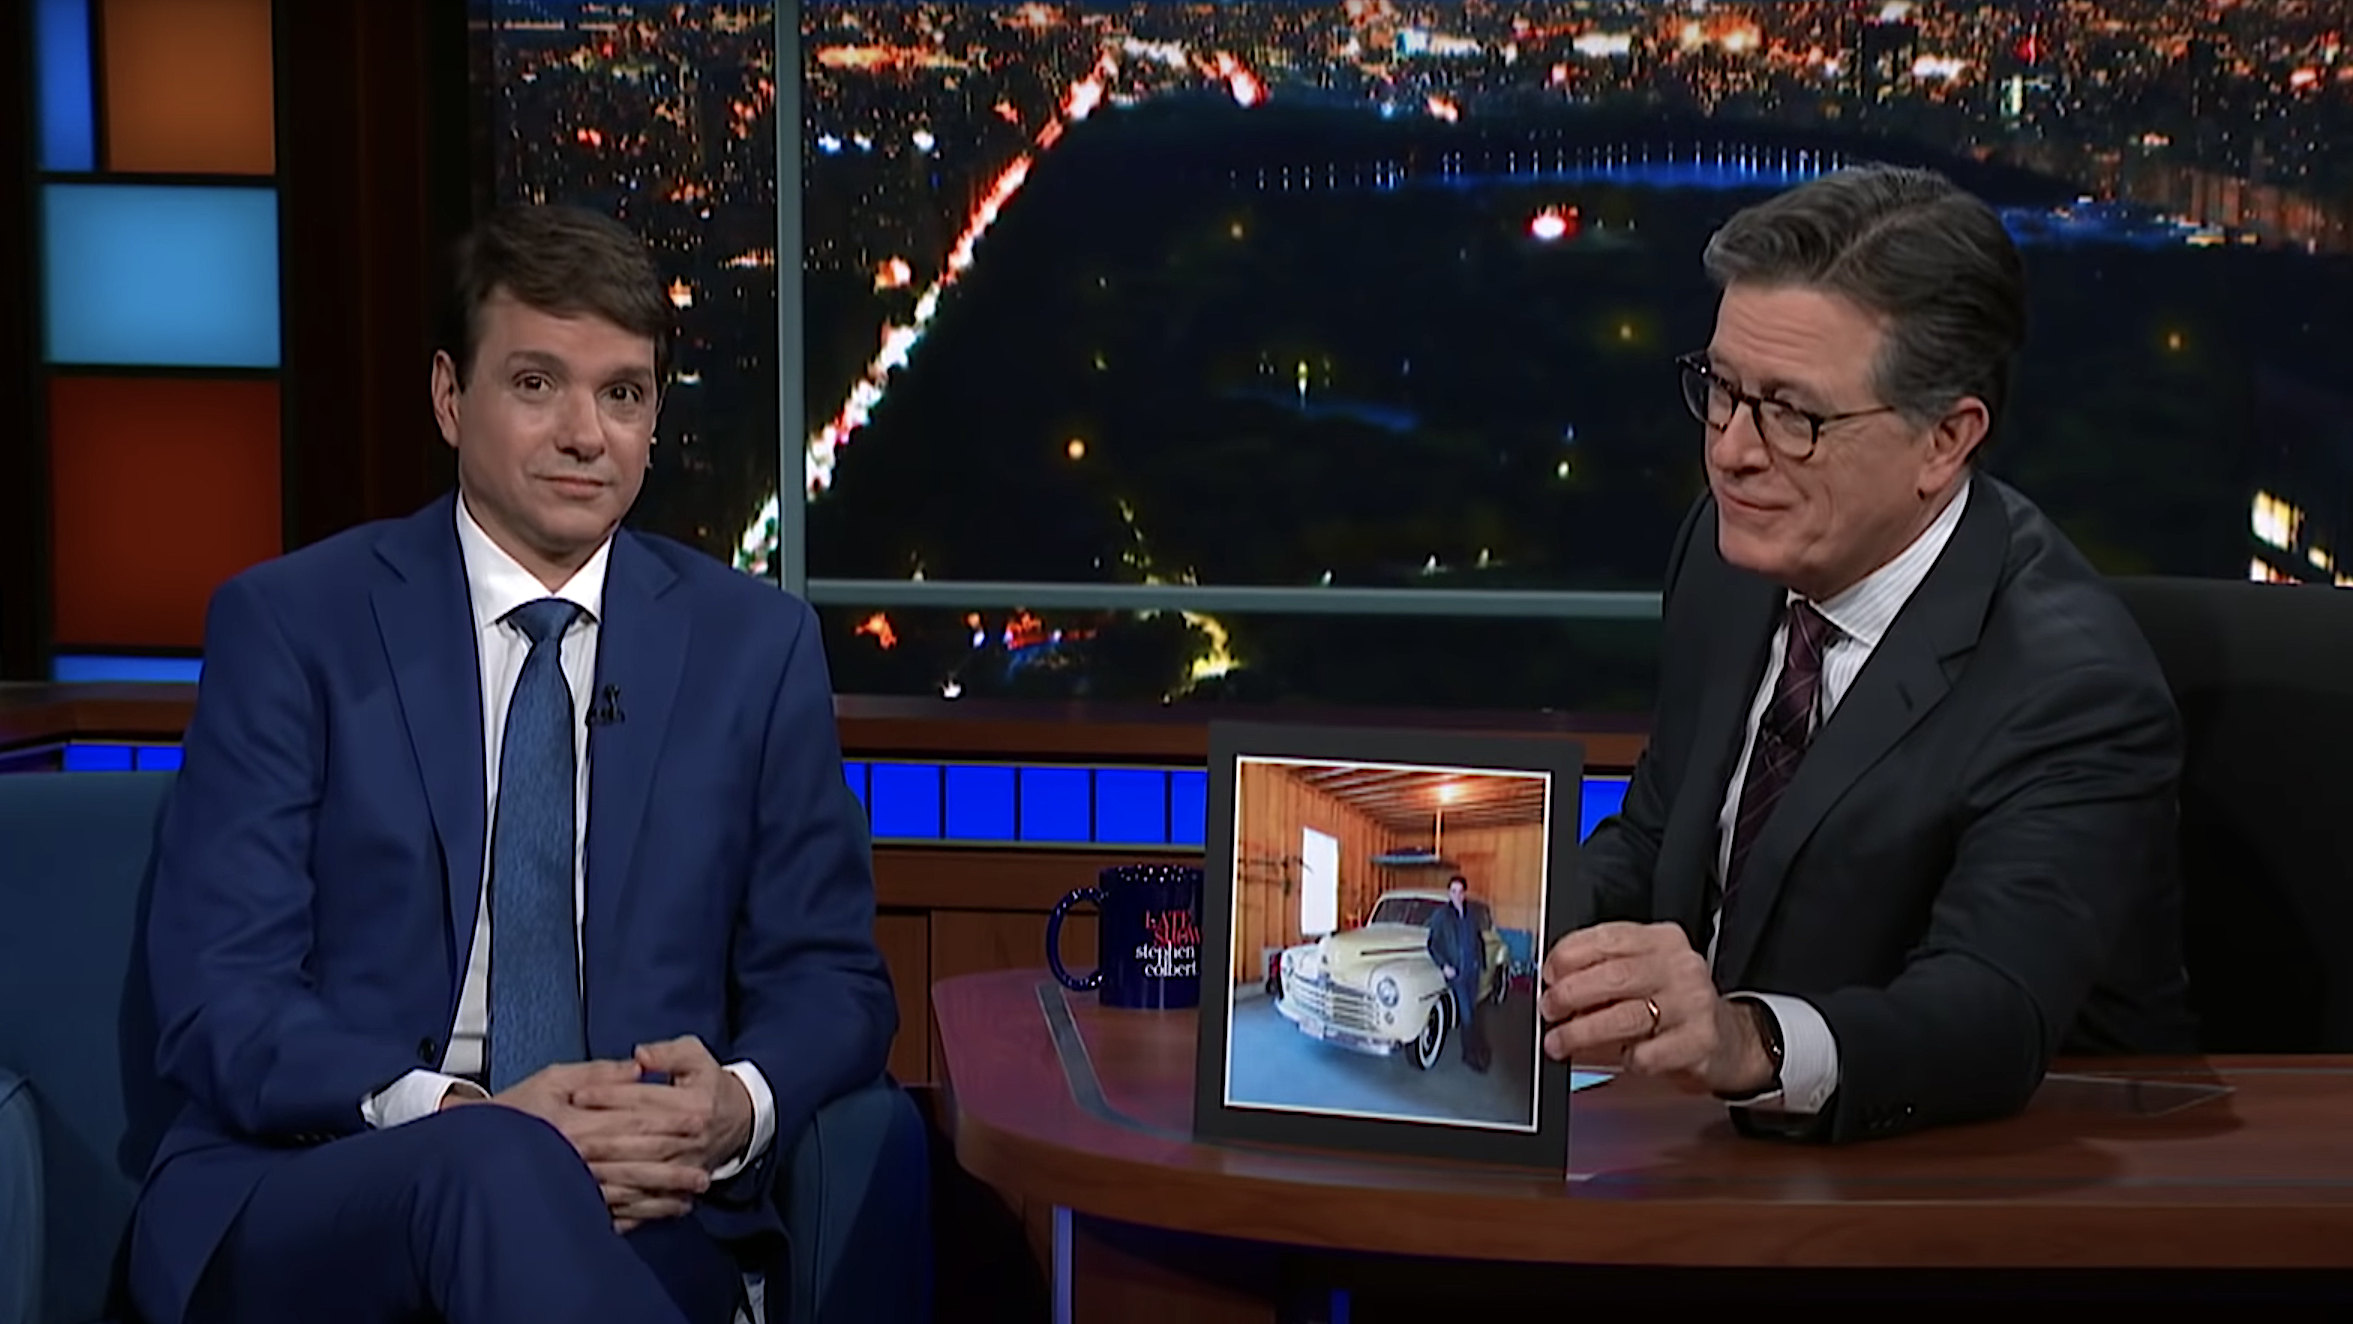 Ralph Macchio tells an envious Stephen Colbert that he still has the “wax on, wax off” car